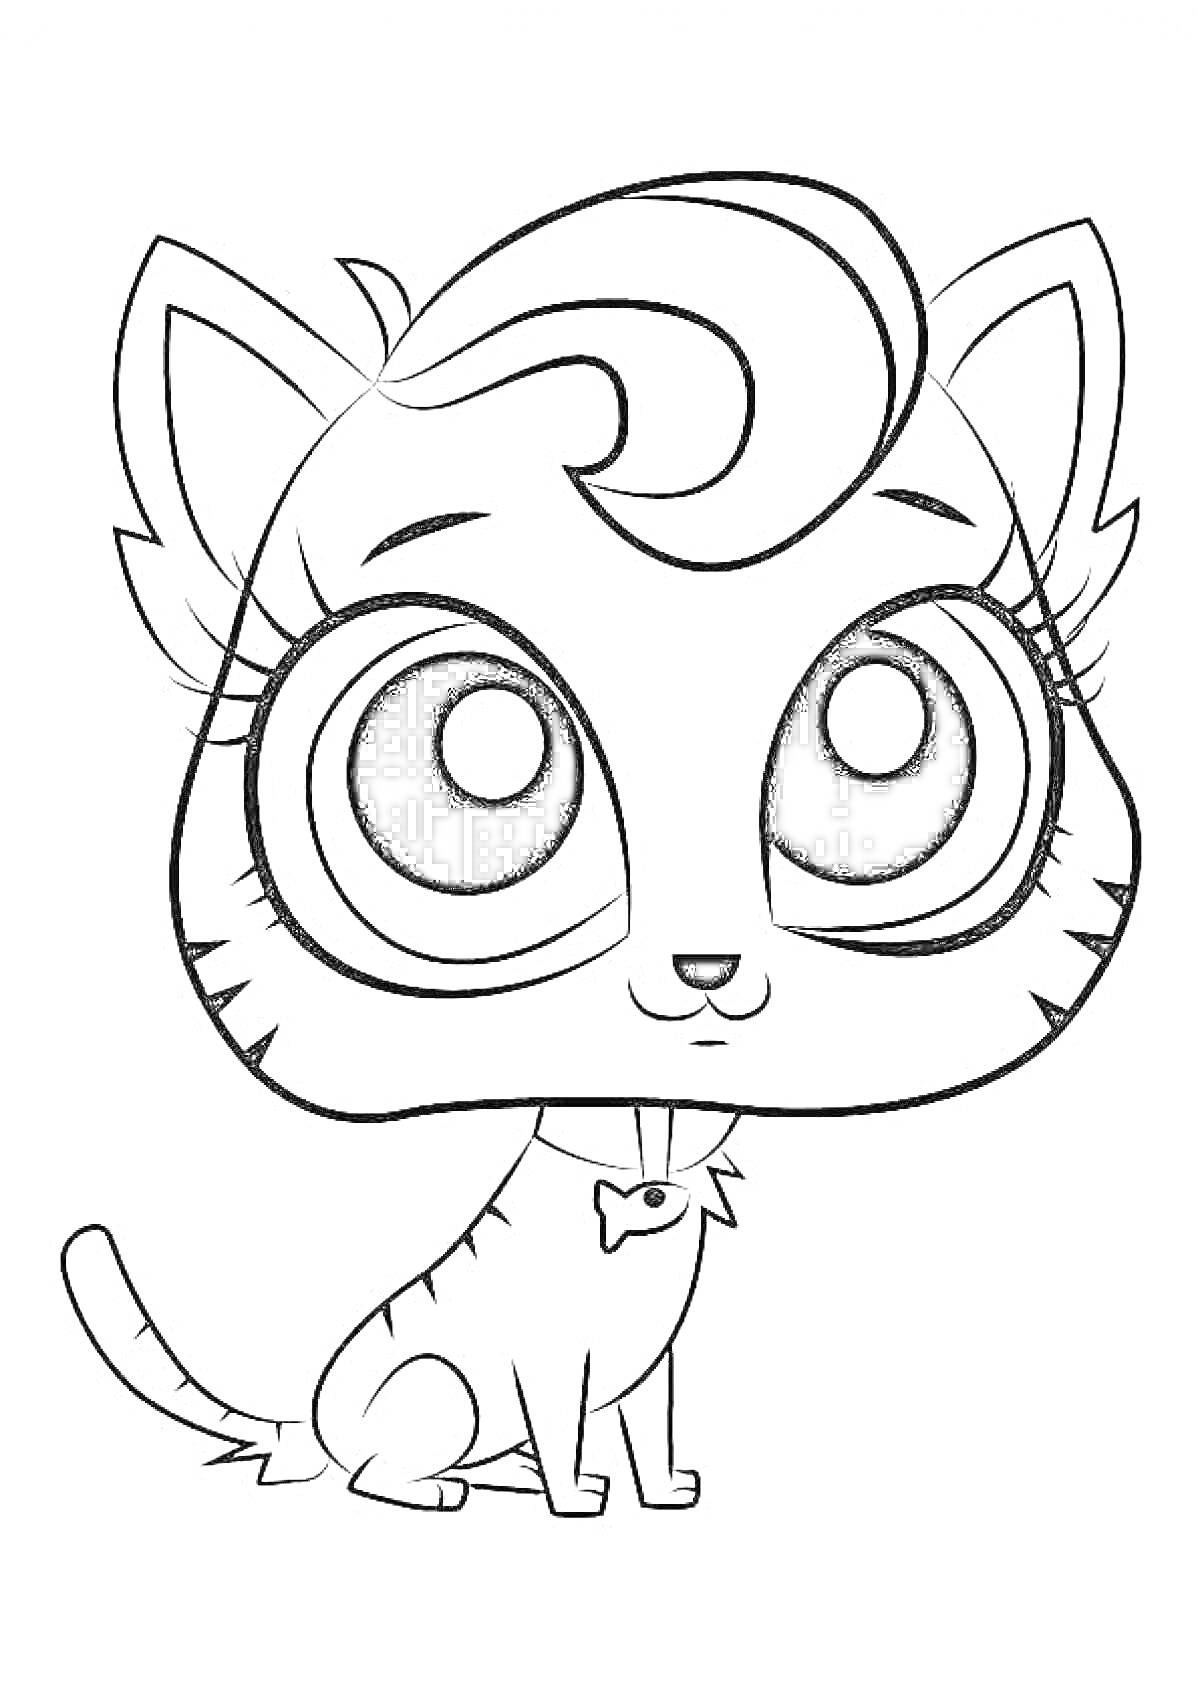 Раскраска Кошка с большими глазами и бантиком на шее из Литл Пет Шоп